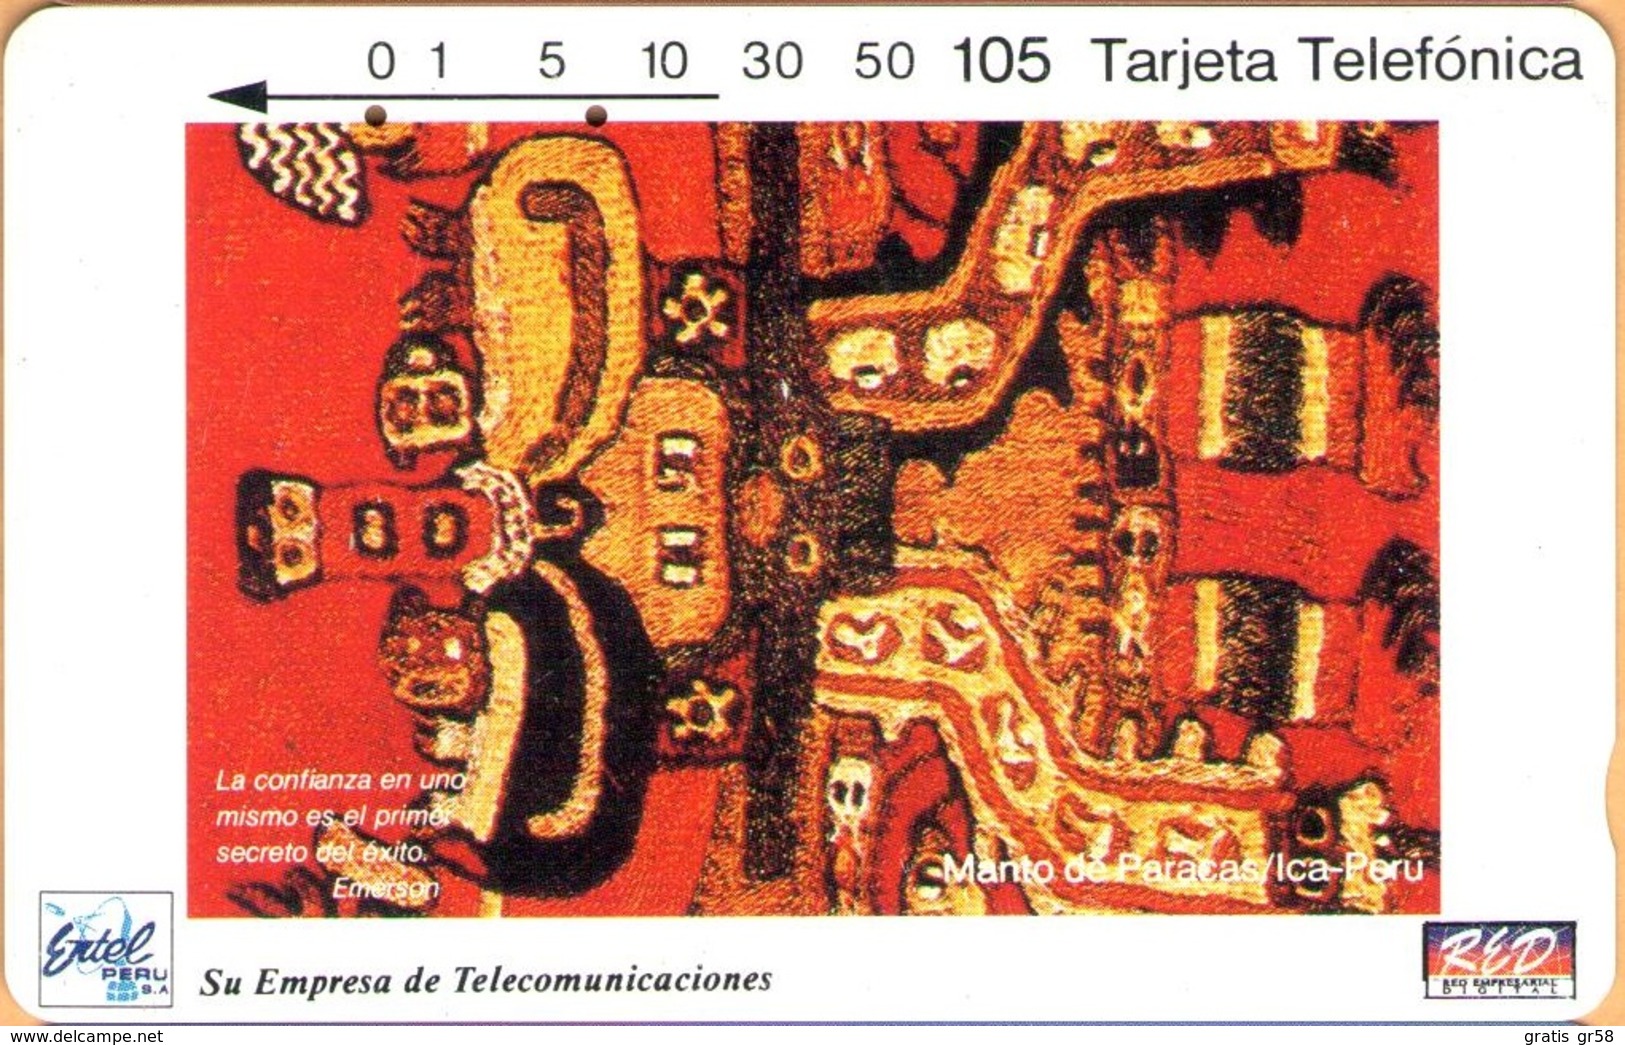 Peru - PE-M1A, Entel/RED, Segunda Serie Enero/94, Tamura, Manto Paracas, 105 U, 10.000ex, 1994, Used - Perú